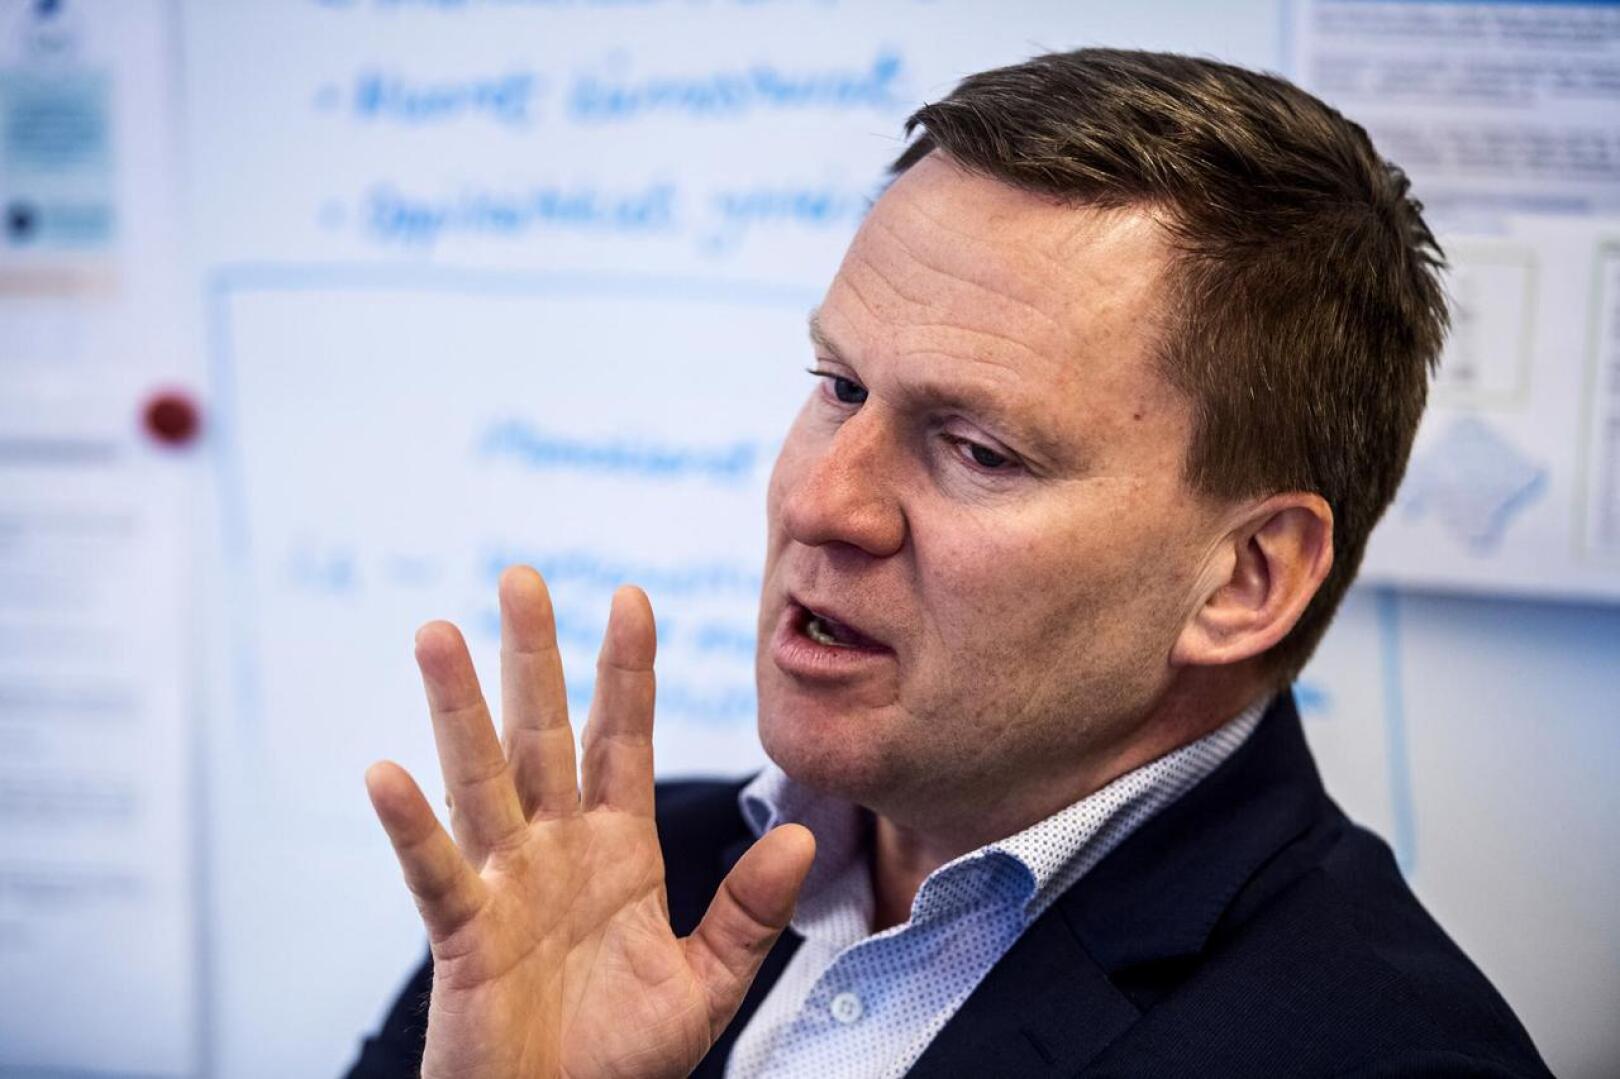 Suomen Yrittäjien pääekonomisti Mika Kuismanen kävi maanantaina Kokkolassa puhumassa yrittäjien kannalta tärkeistä vaaliteemoista.